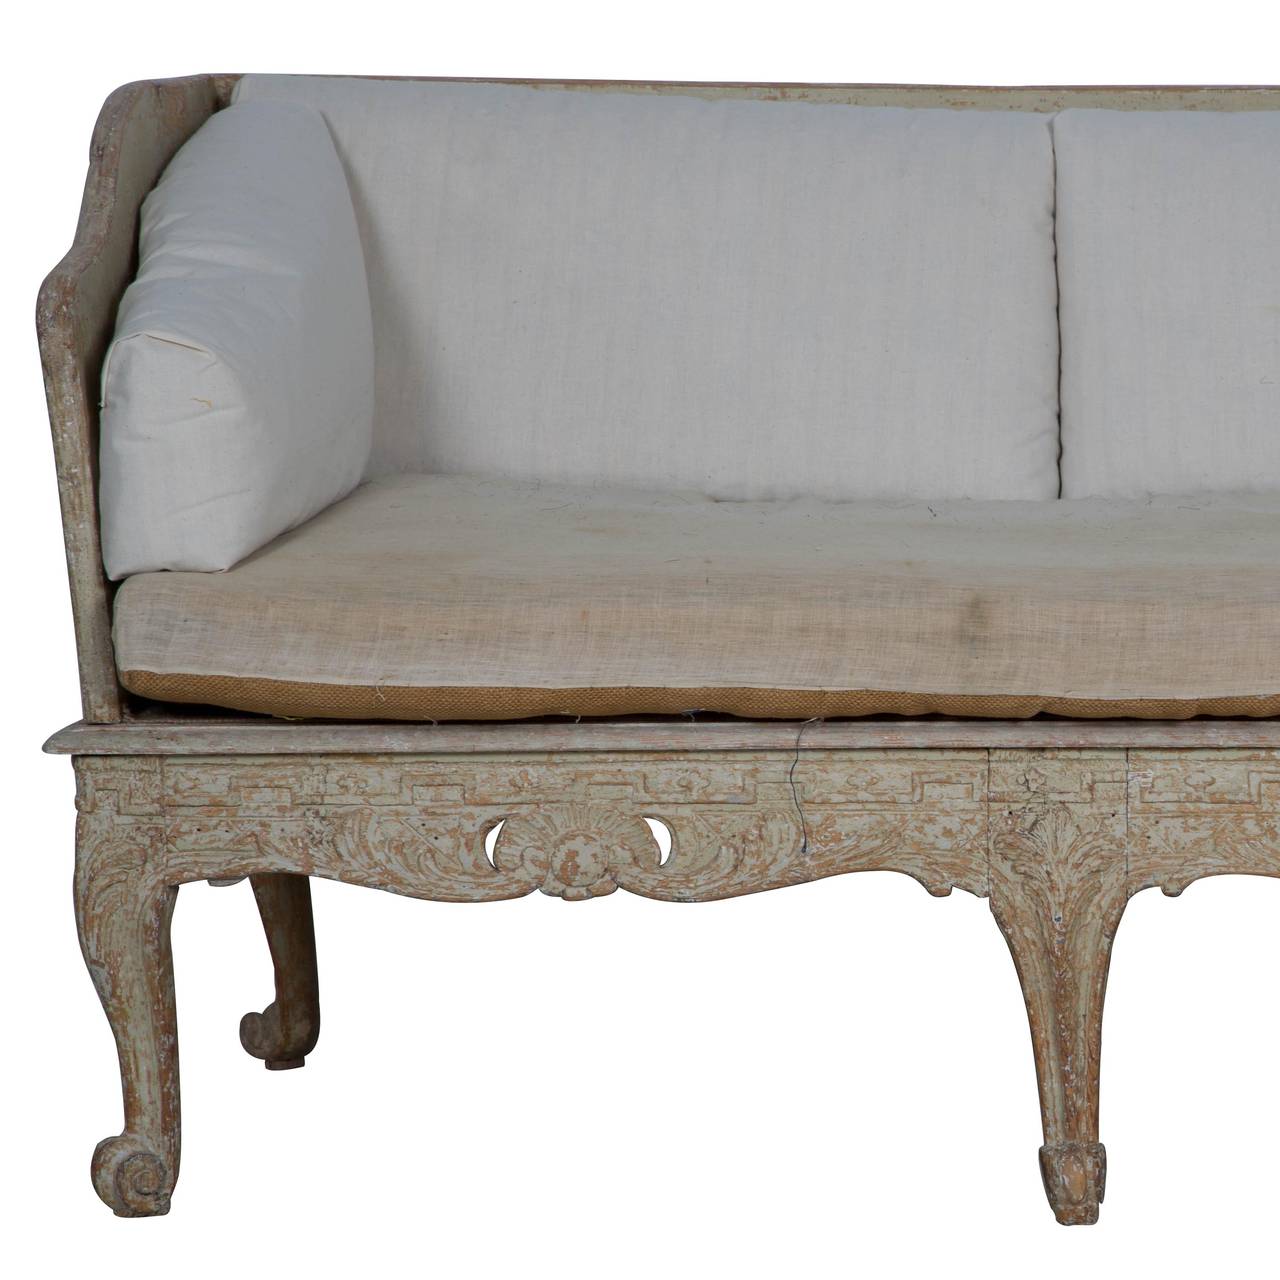 18th Century Rococo Trågsoffa (Sofa) Signed C. Tietze, circa 1760